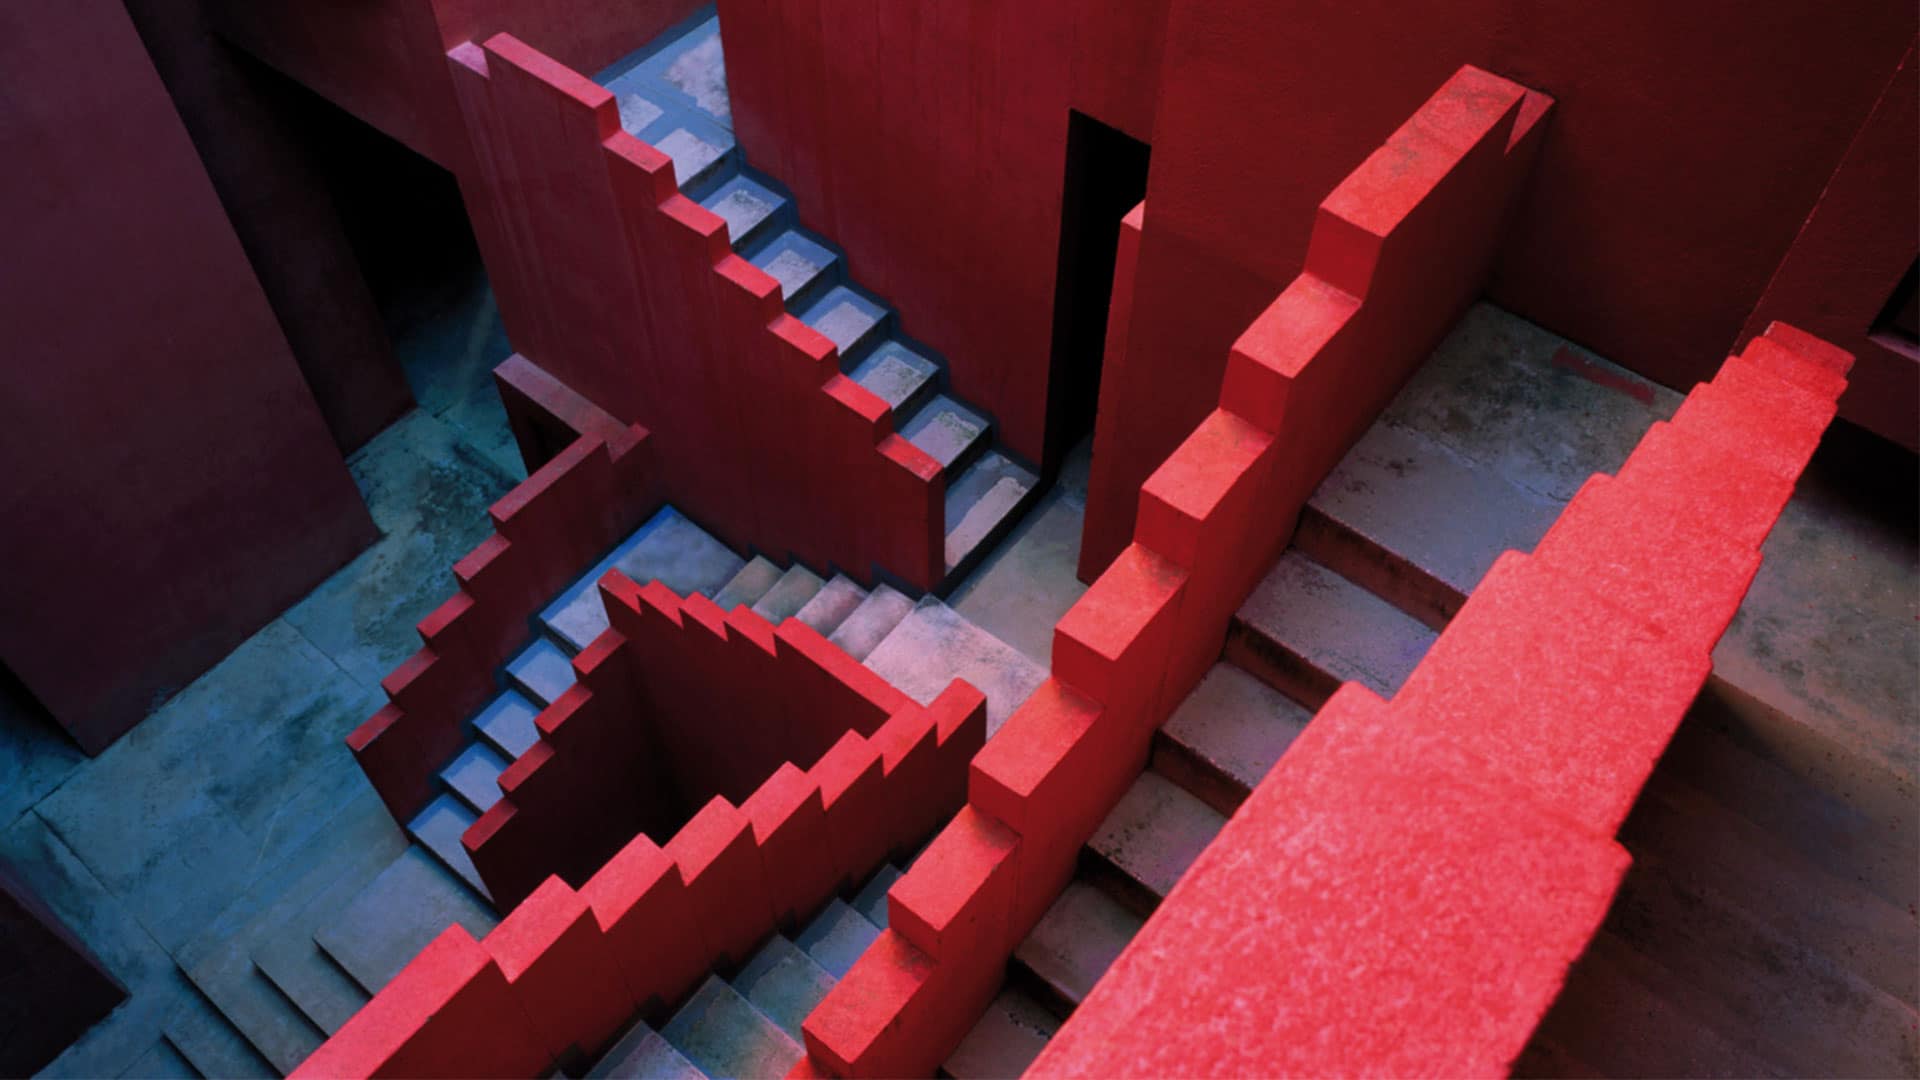 La Muralla Roja image of the red concrete stairs handrail.